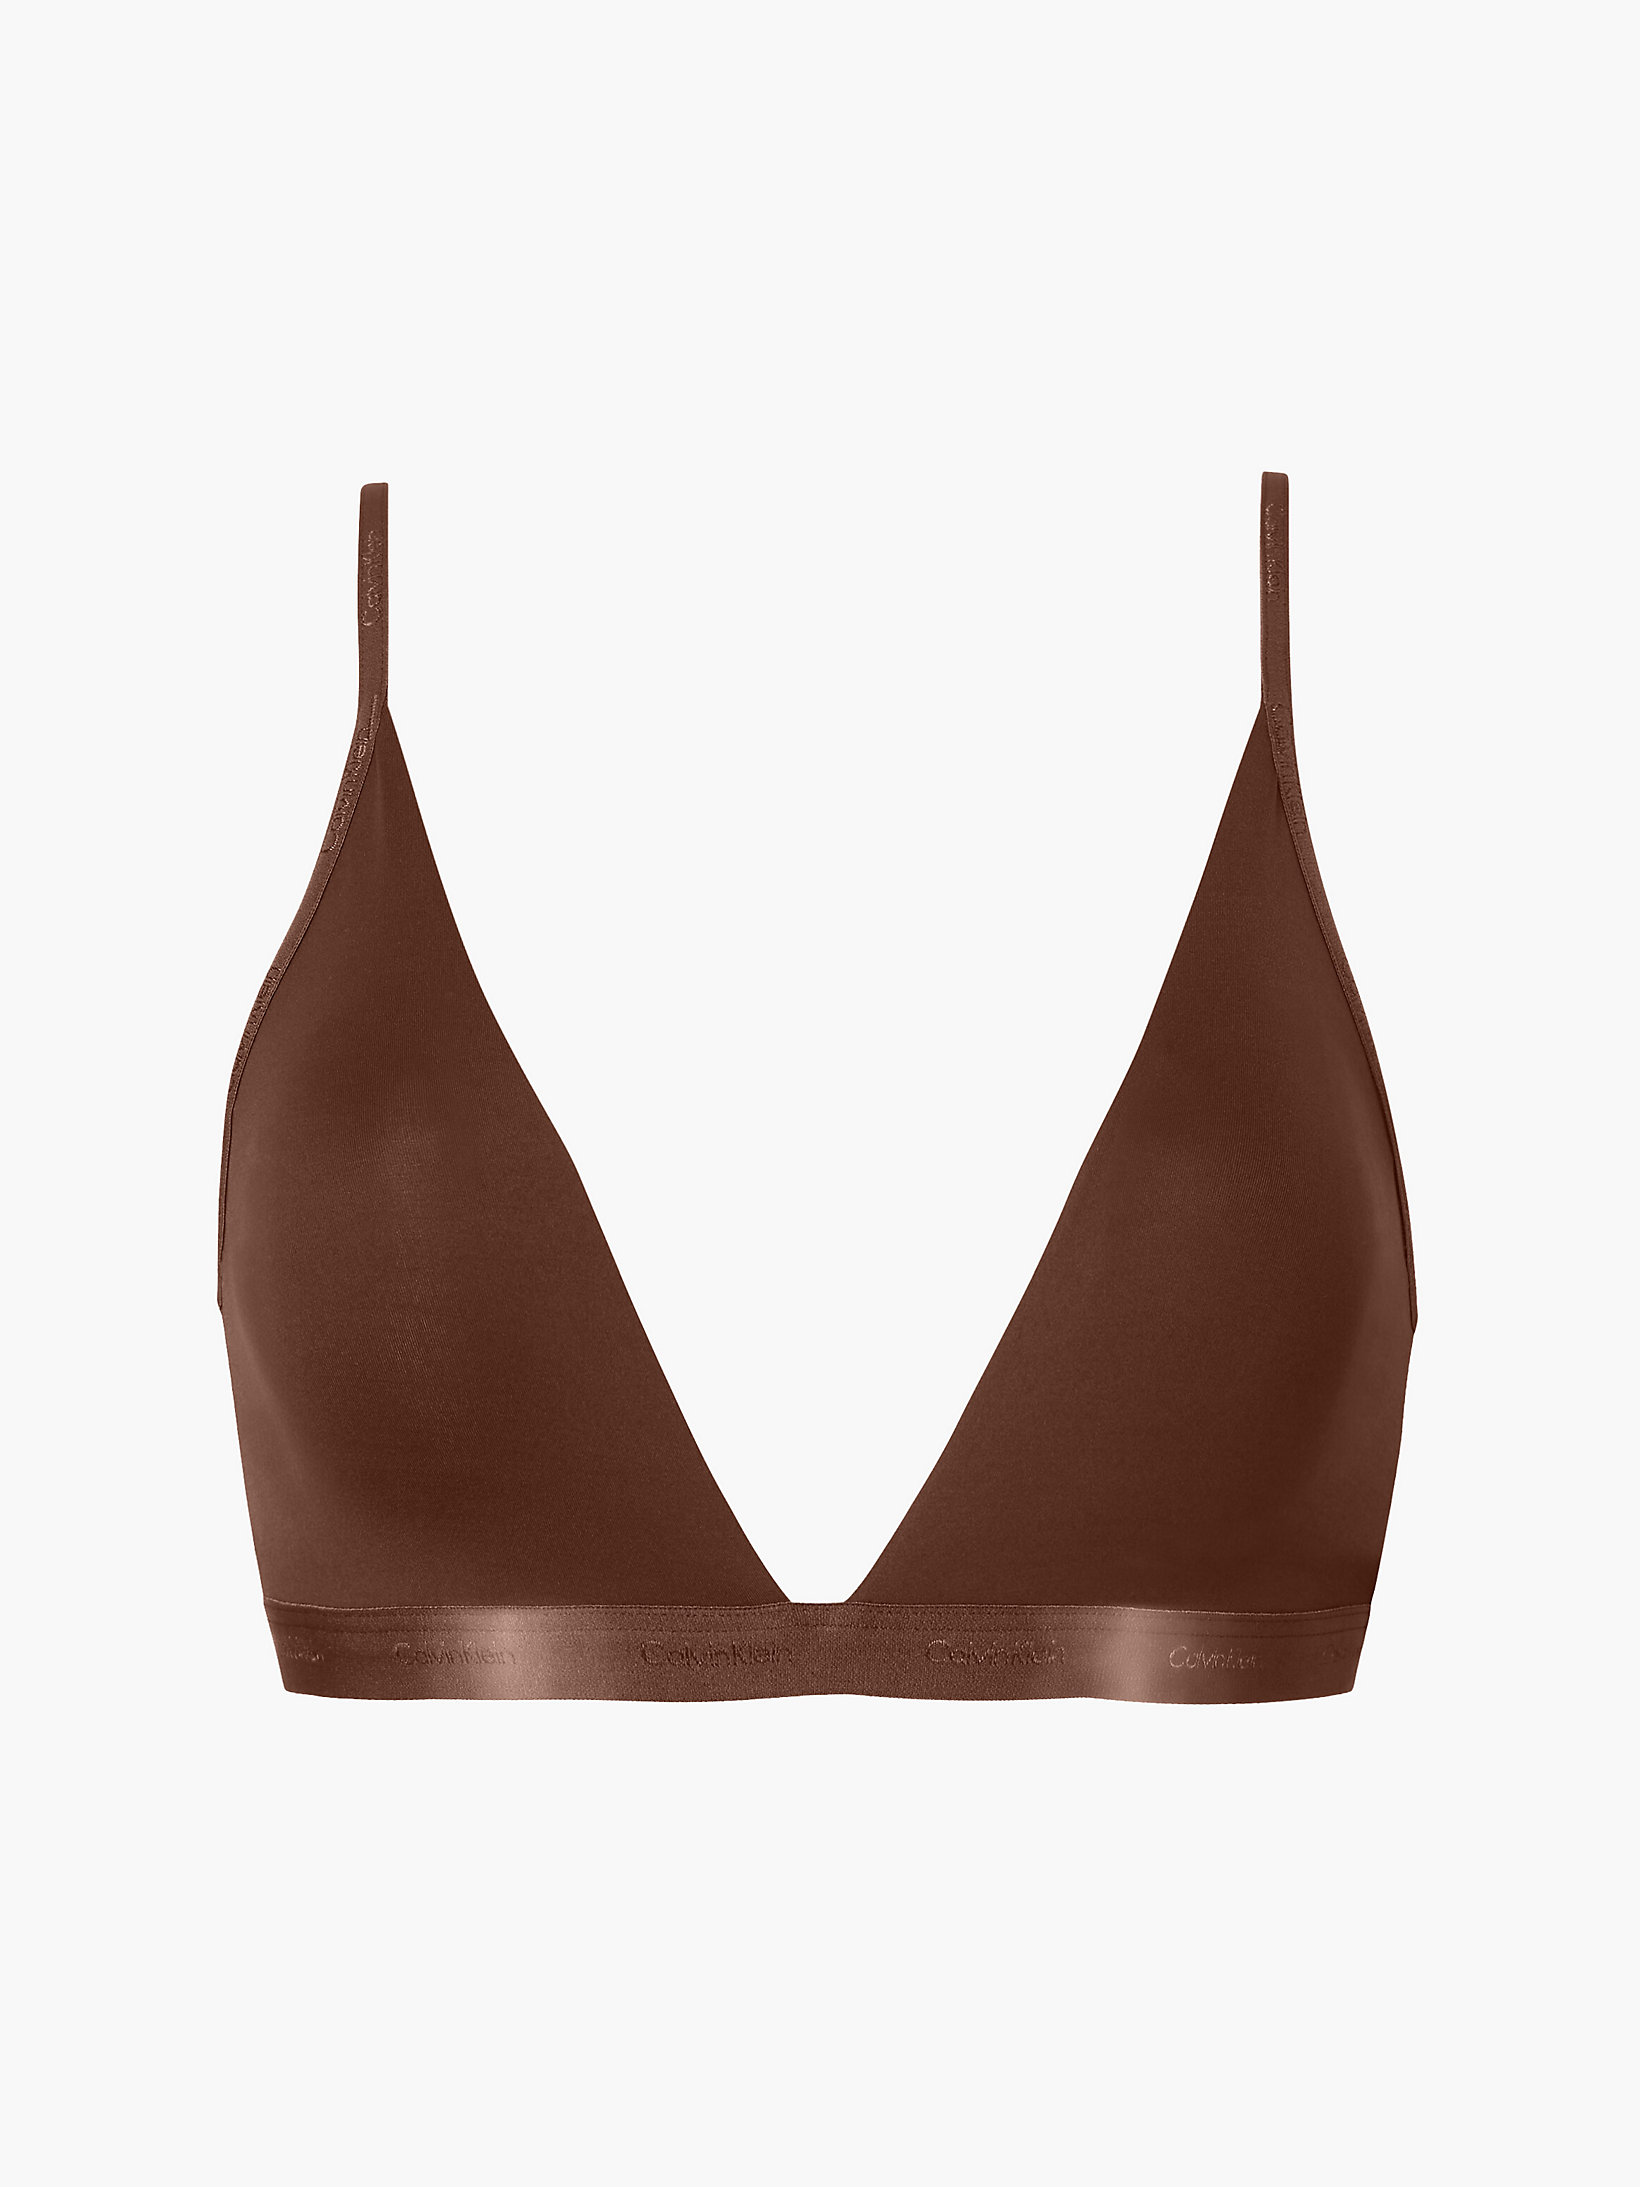 Spruce Triangle Bra - Form To Body undefined women Calvin Klein